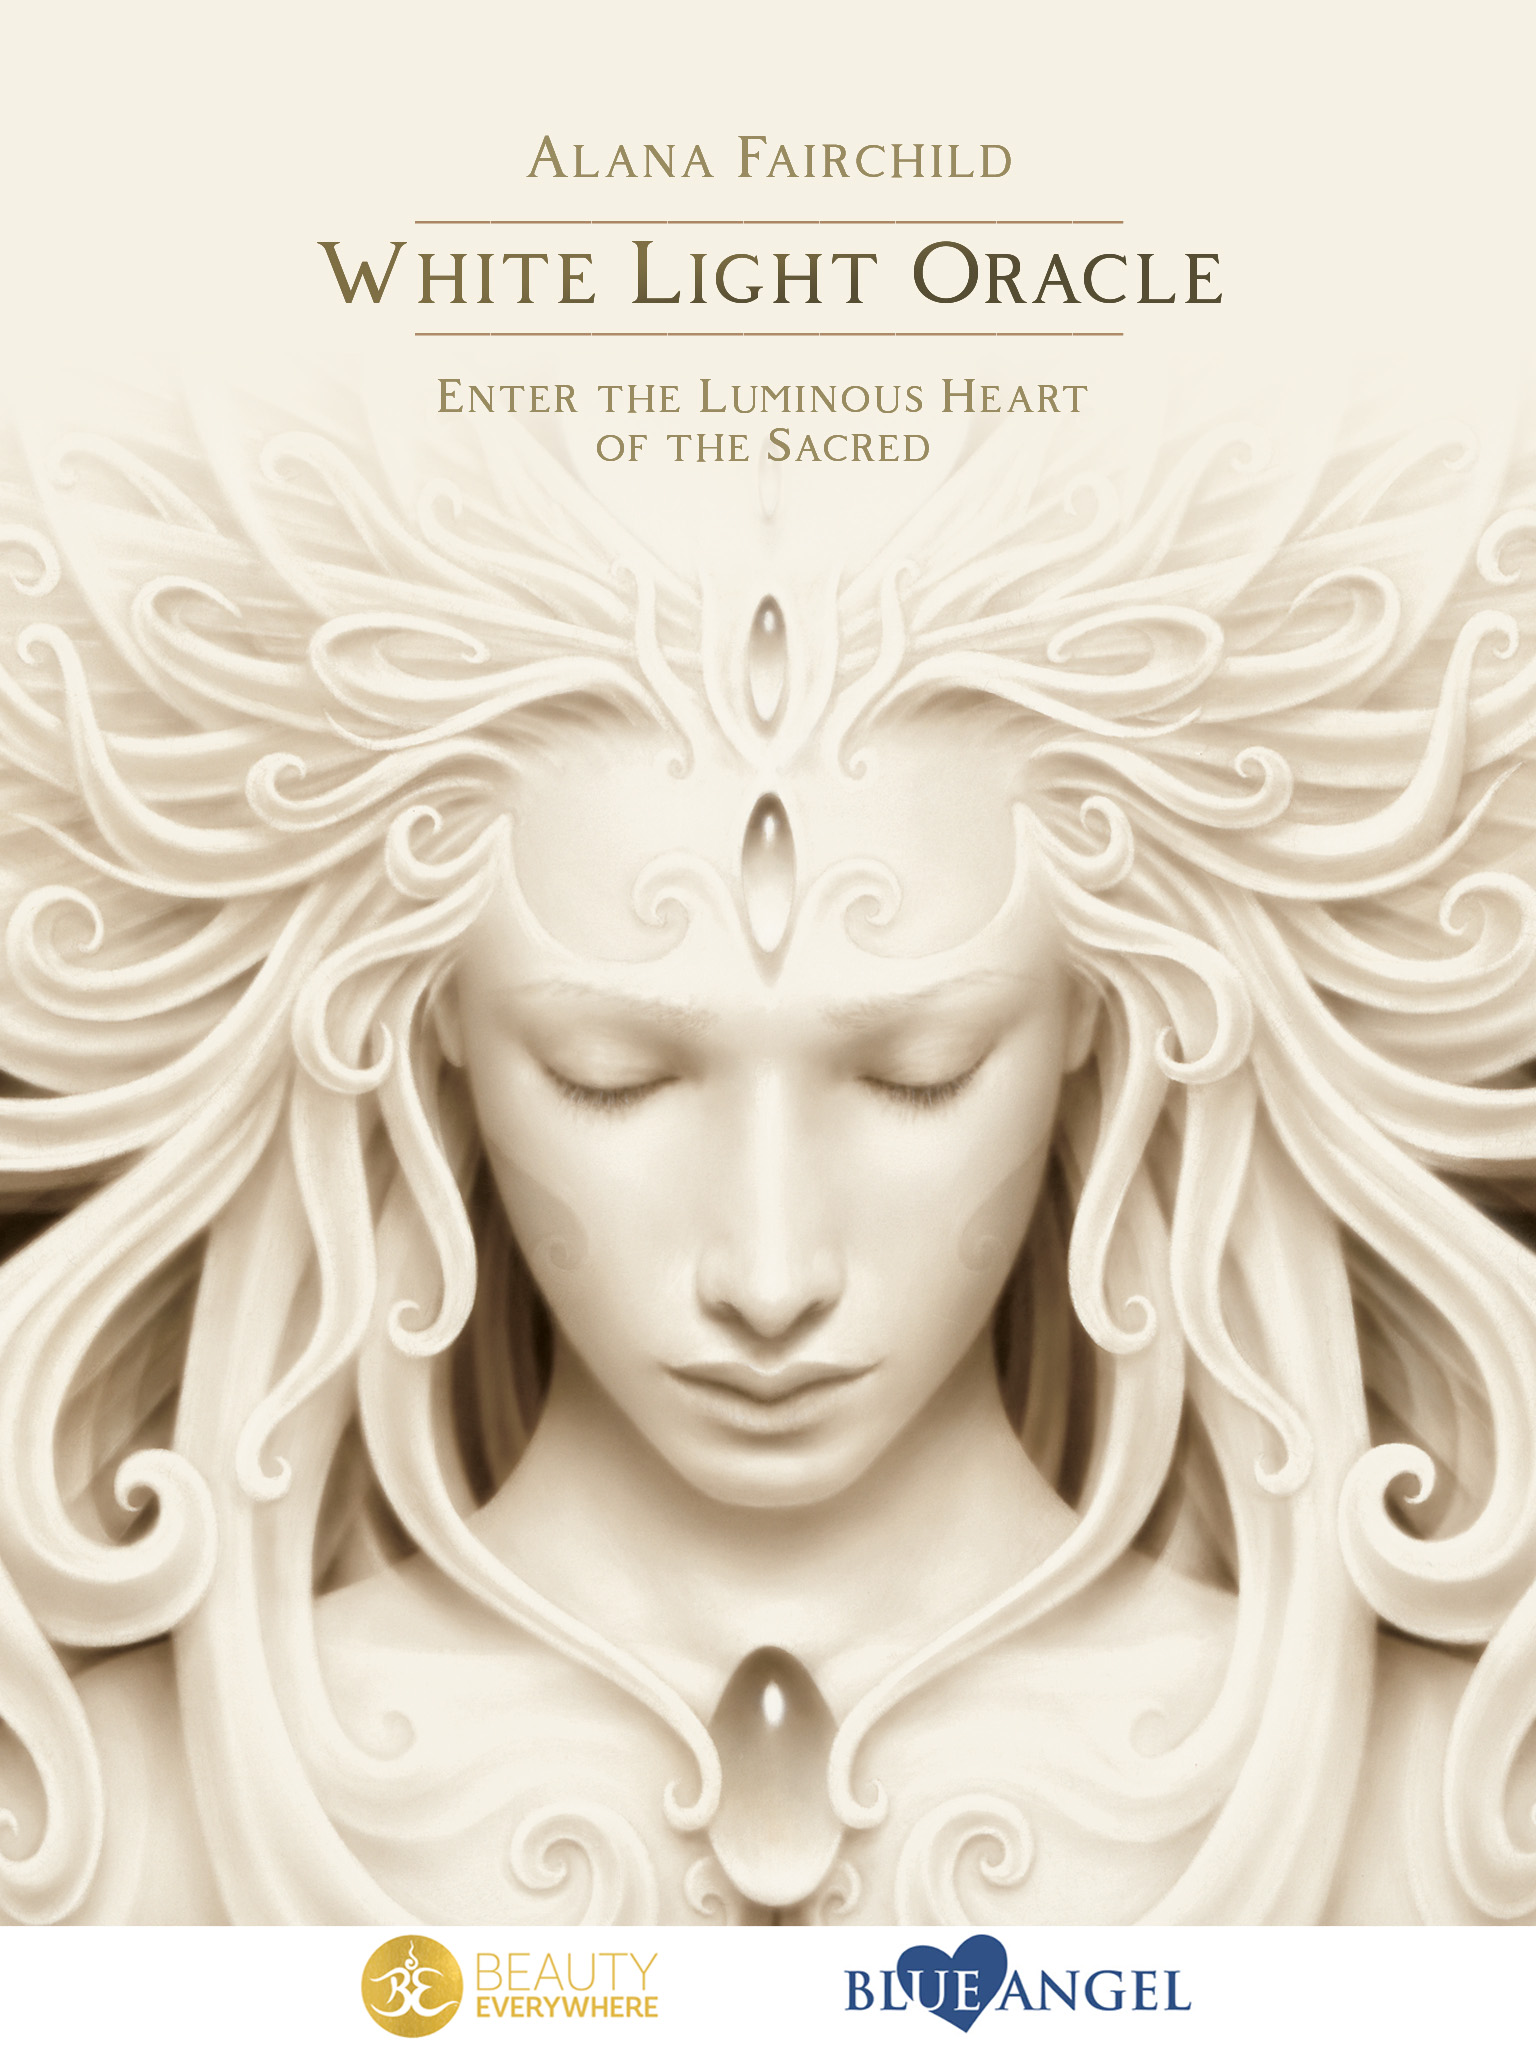 White Light Oracle app by Alana Fairchild